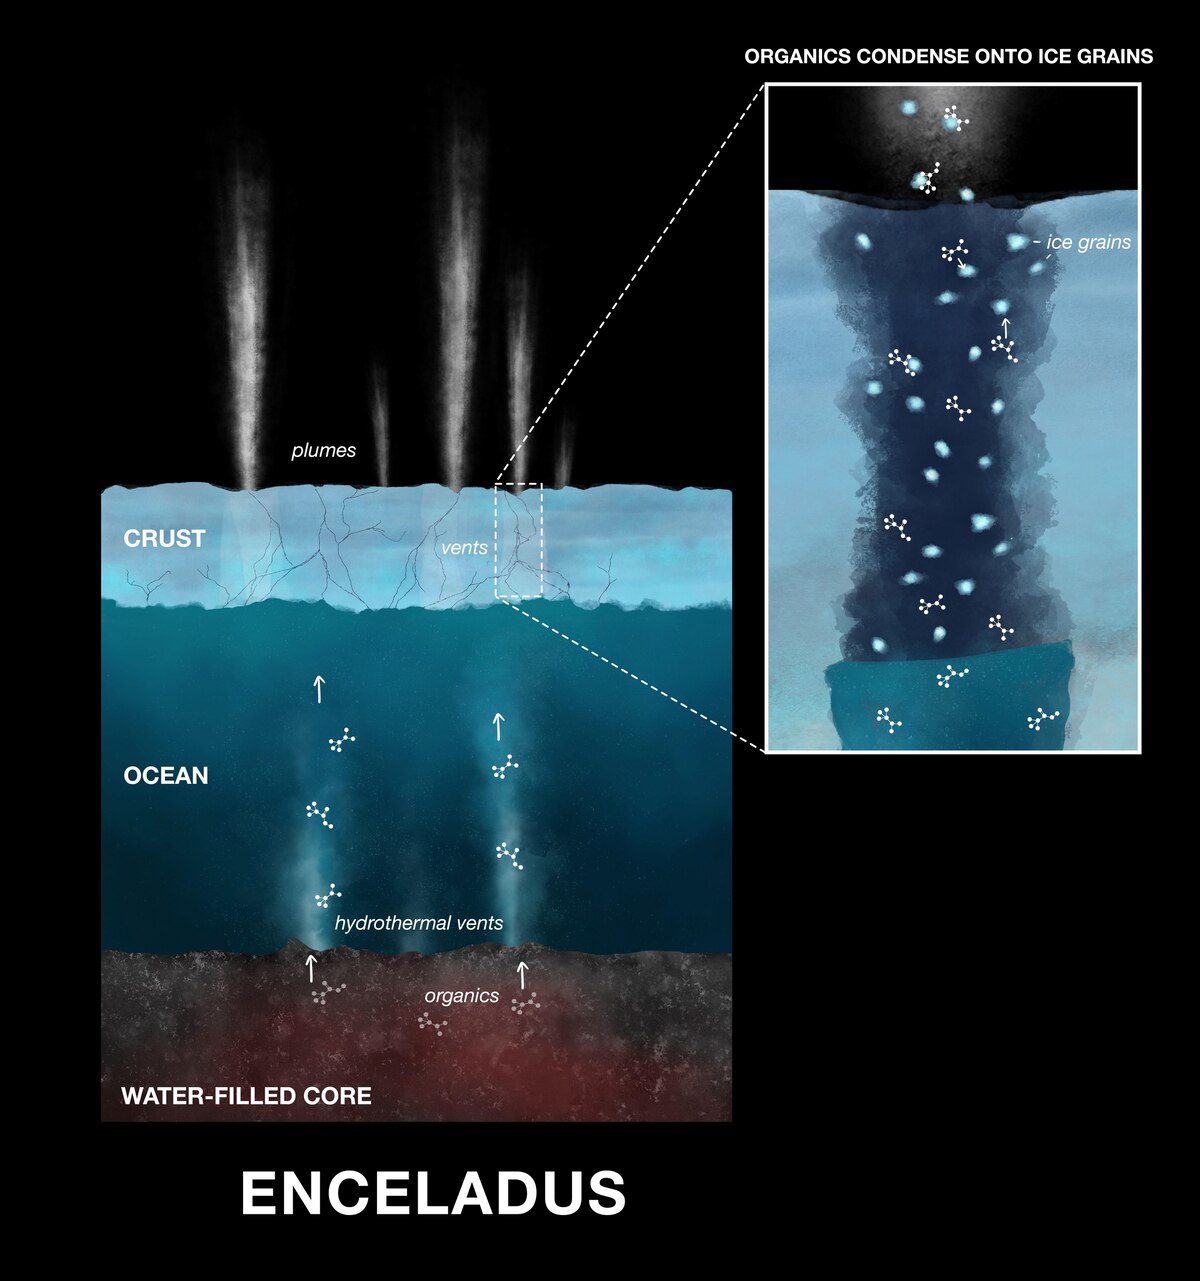 エンケラドスには強力な熱水噴出孔があり、核から内部海に物質を噴出させている可能性があると考えられている。水と混ざり合った物質は、水蒸気や氷の粒とともに宇宙空間に噴出する。（ILLUSTRATION BY NASA/JPL-CALTECH）